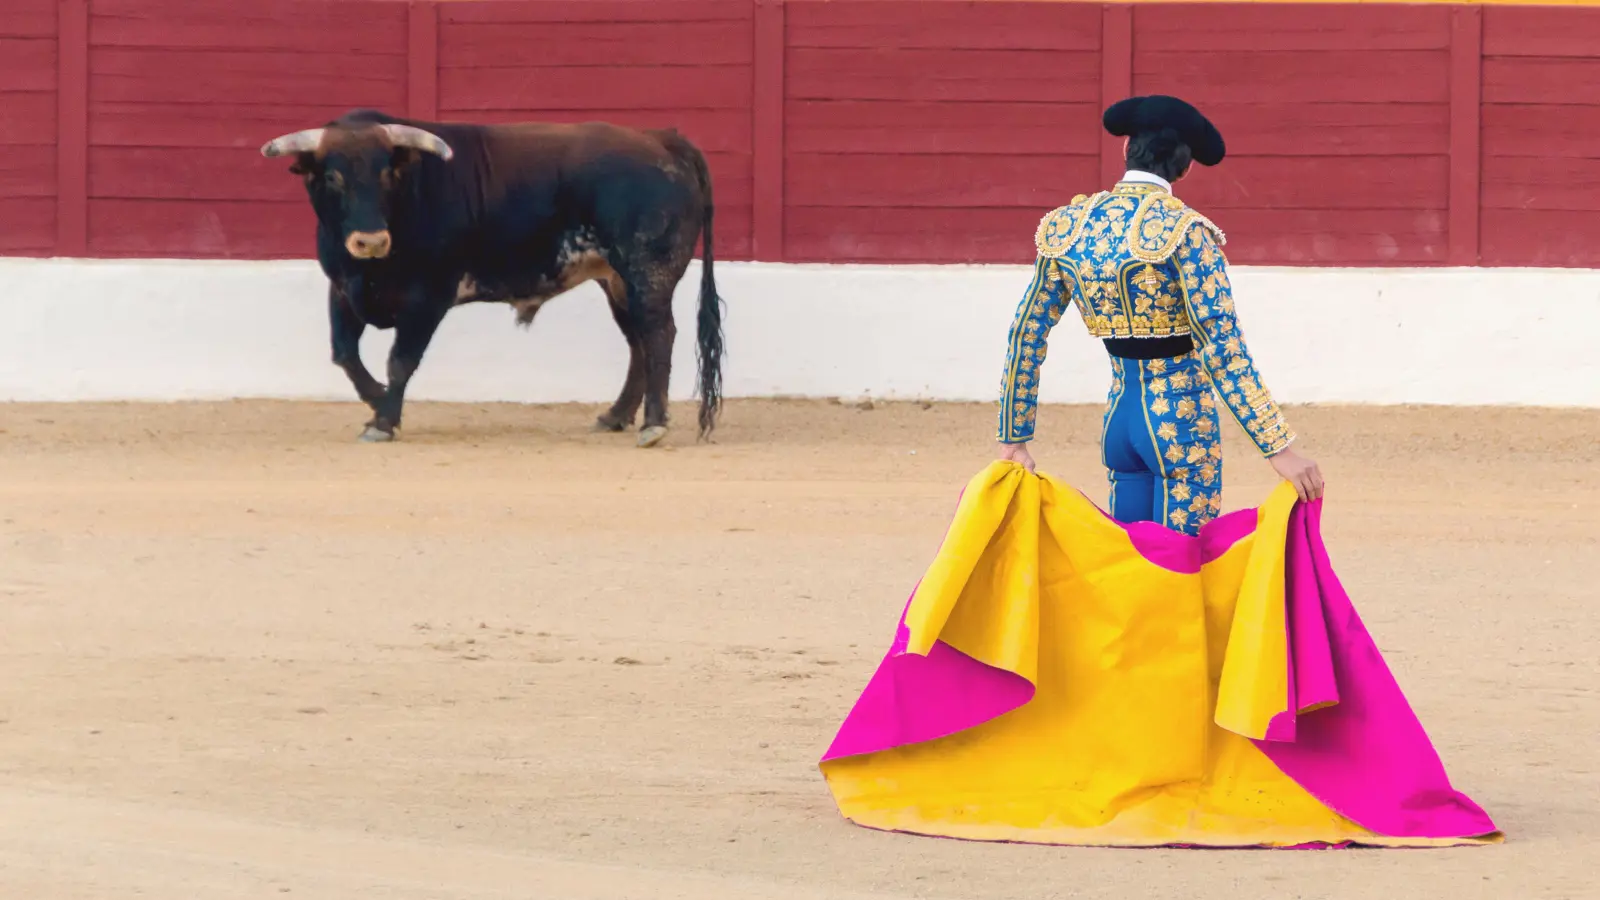 إلغاء الجائزة الوطنية لمصارعة الثيران يثير الجدل في إسبانيا